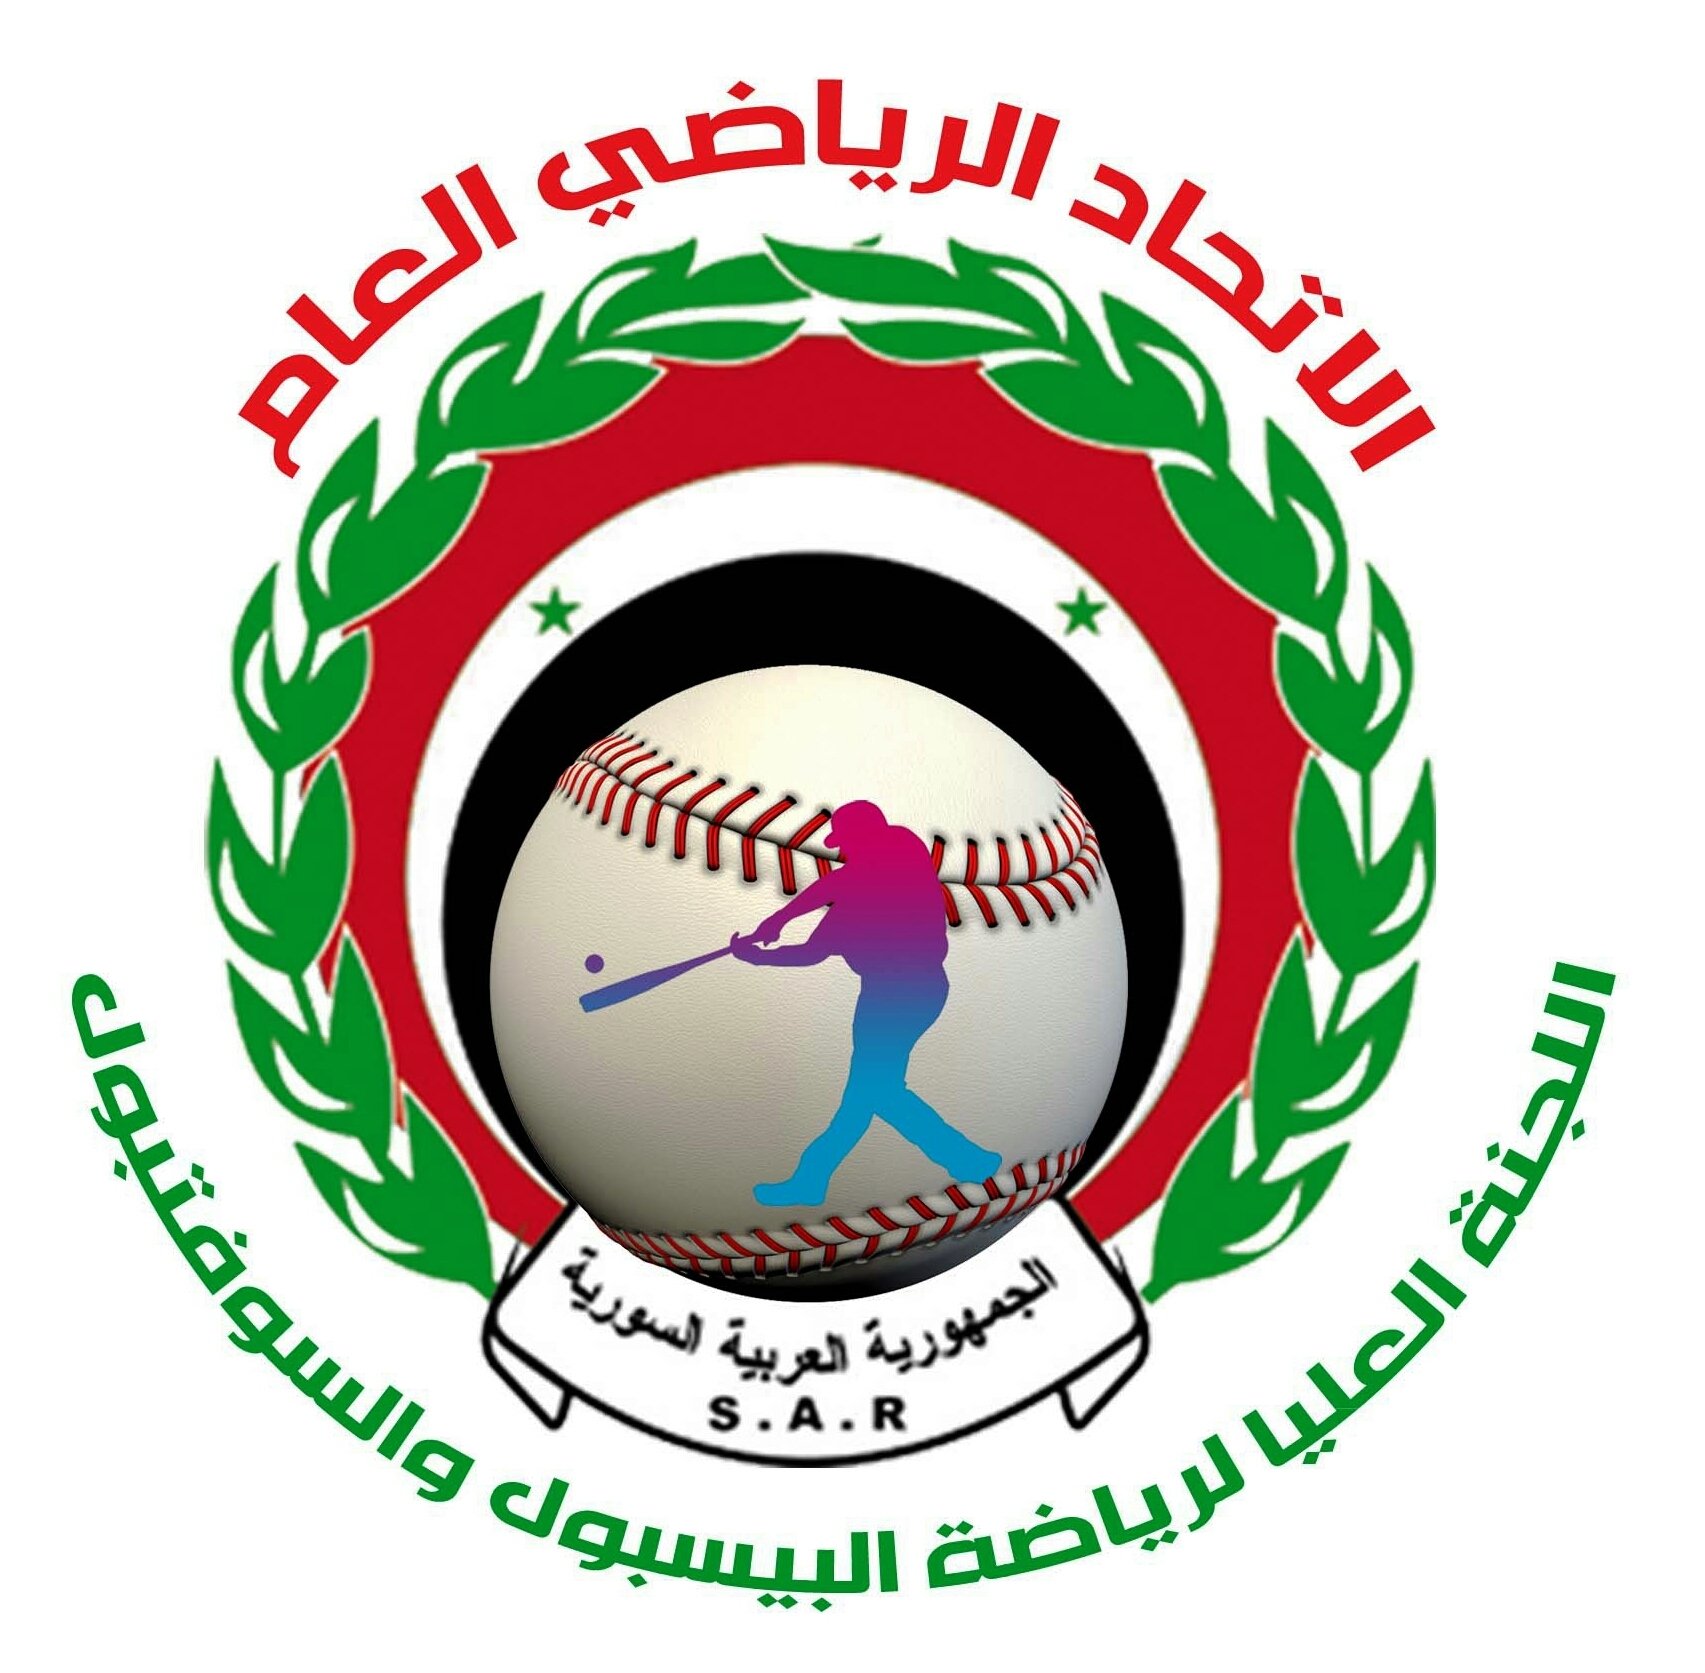 انطلاقة جديدة للعبة البيسبول والسوفتبول في سورية
